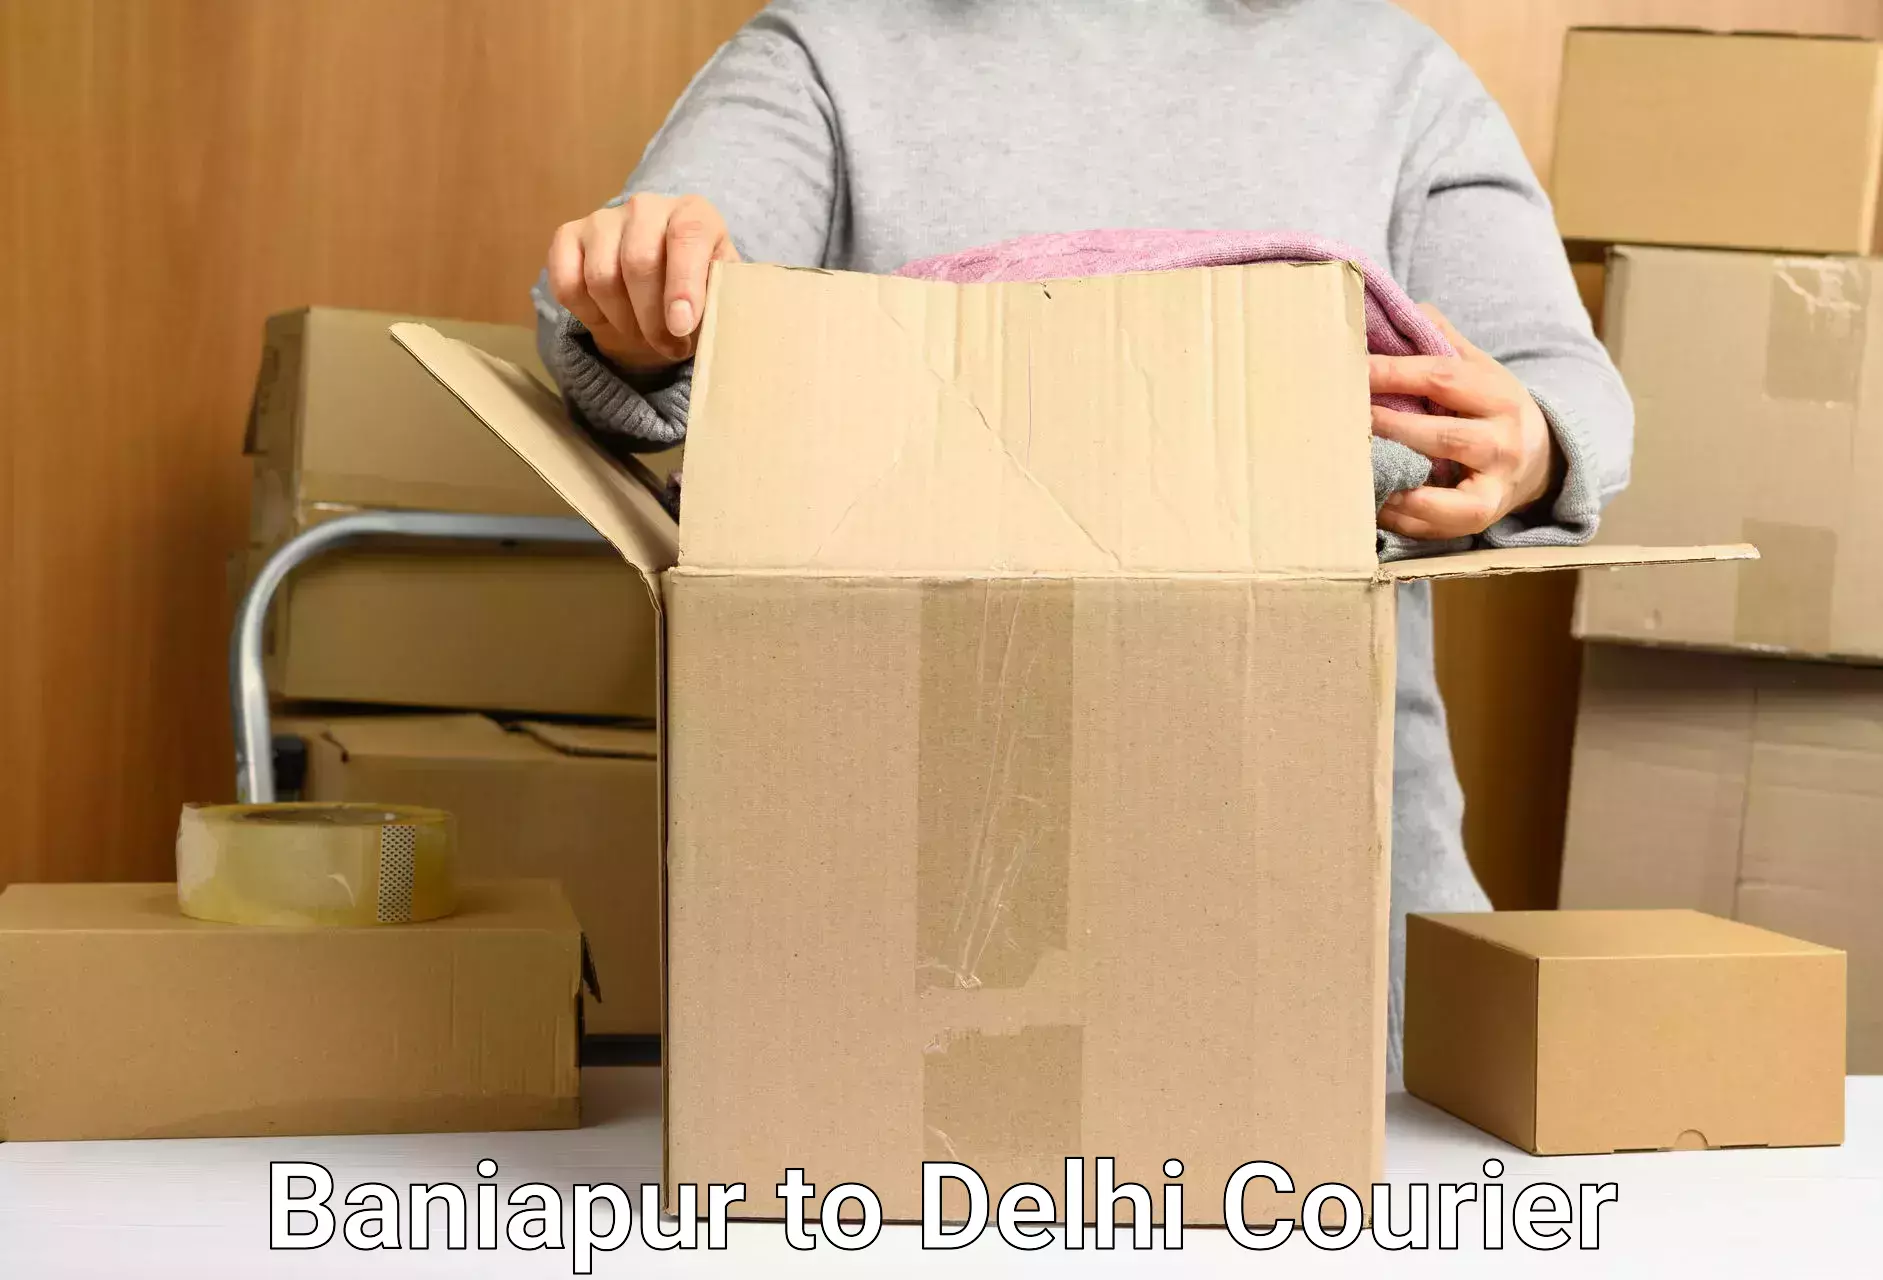 Next day courier Baniapur to NIT Delhi